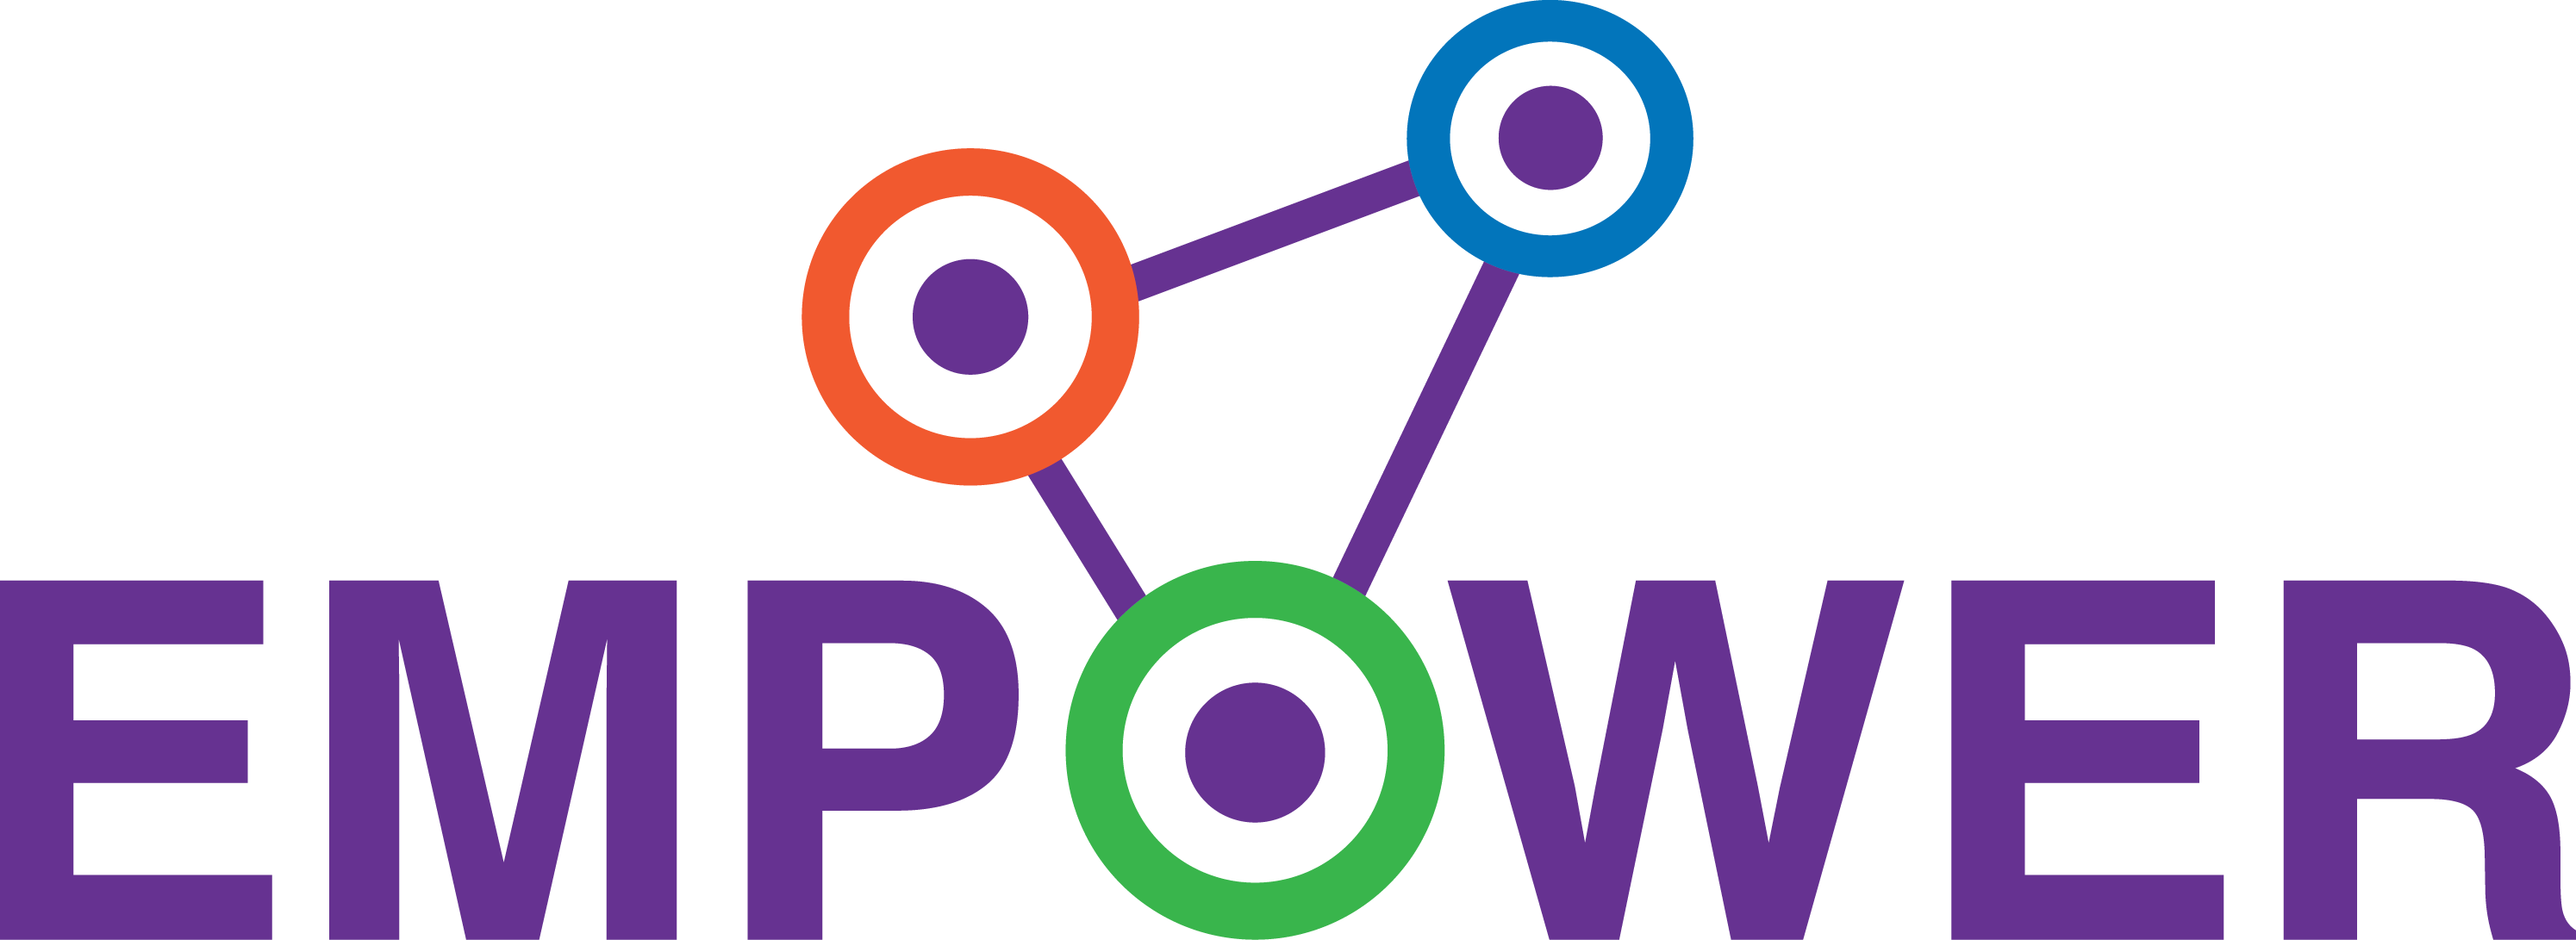 Empower Logo - EMPOWER